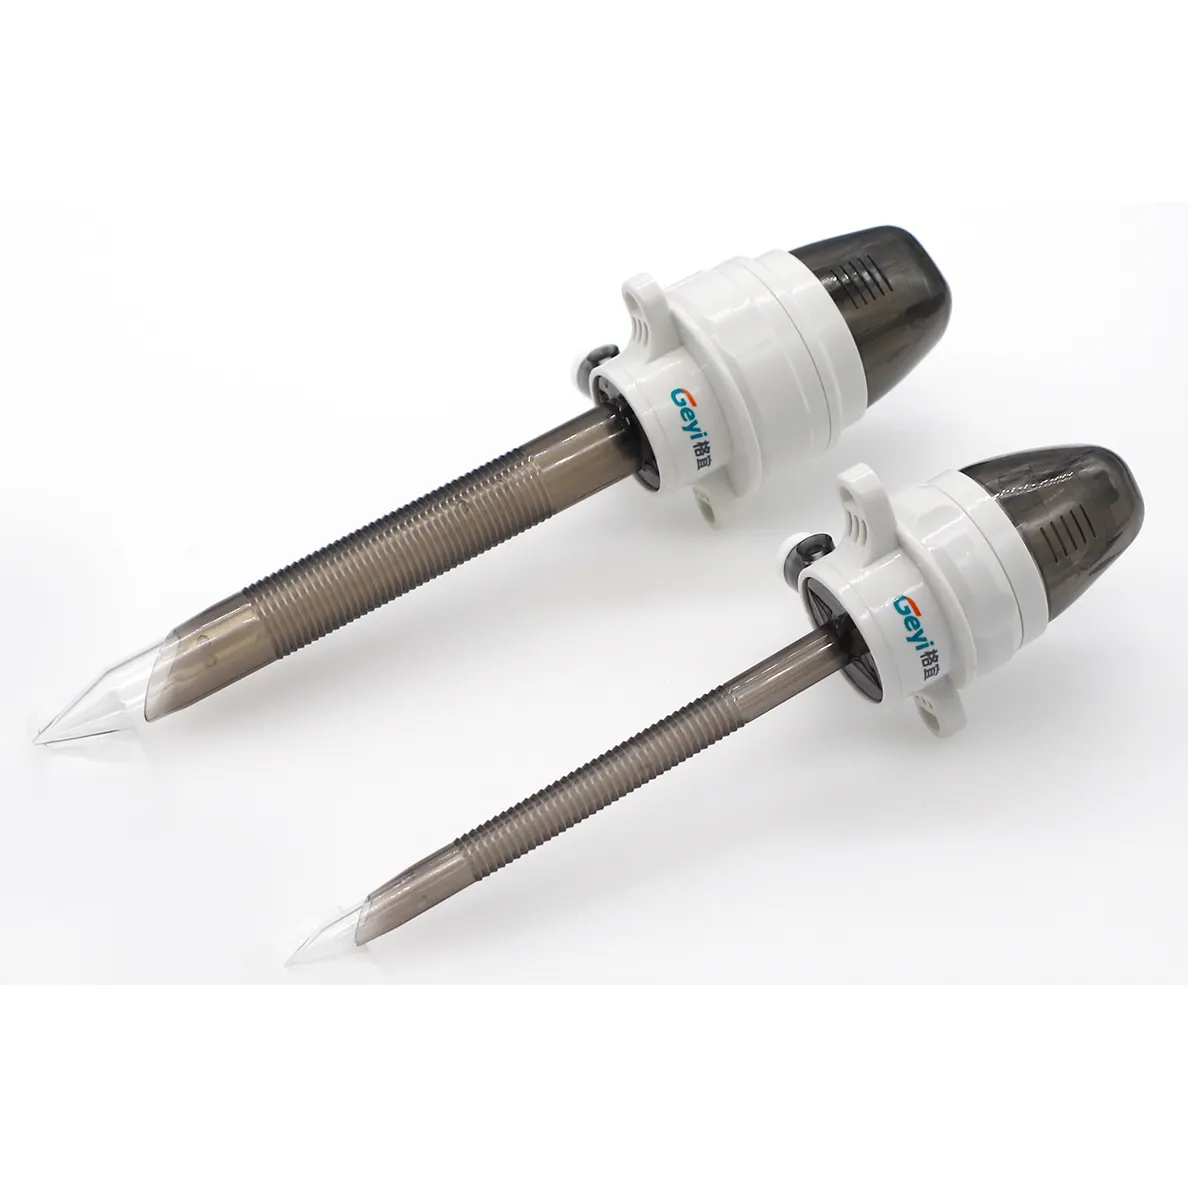 Laparoscopique réutilisable 5mm 10mm 12mm trocart Optica jetable d'instruments chirurgicaux laparoscopiques pour chirurgie invasive minimale